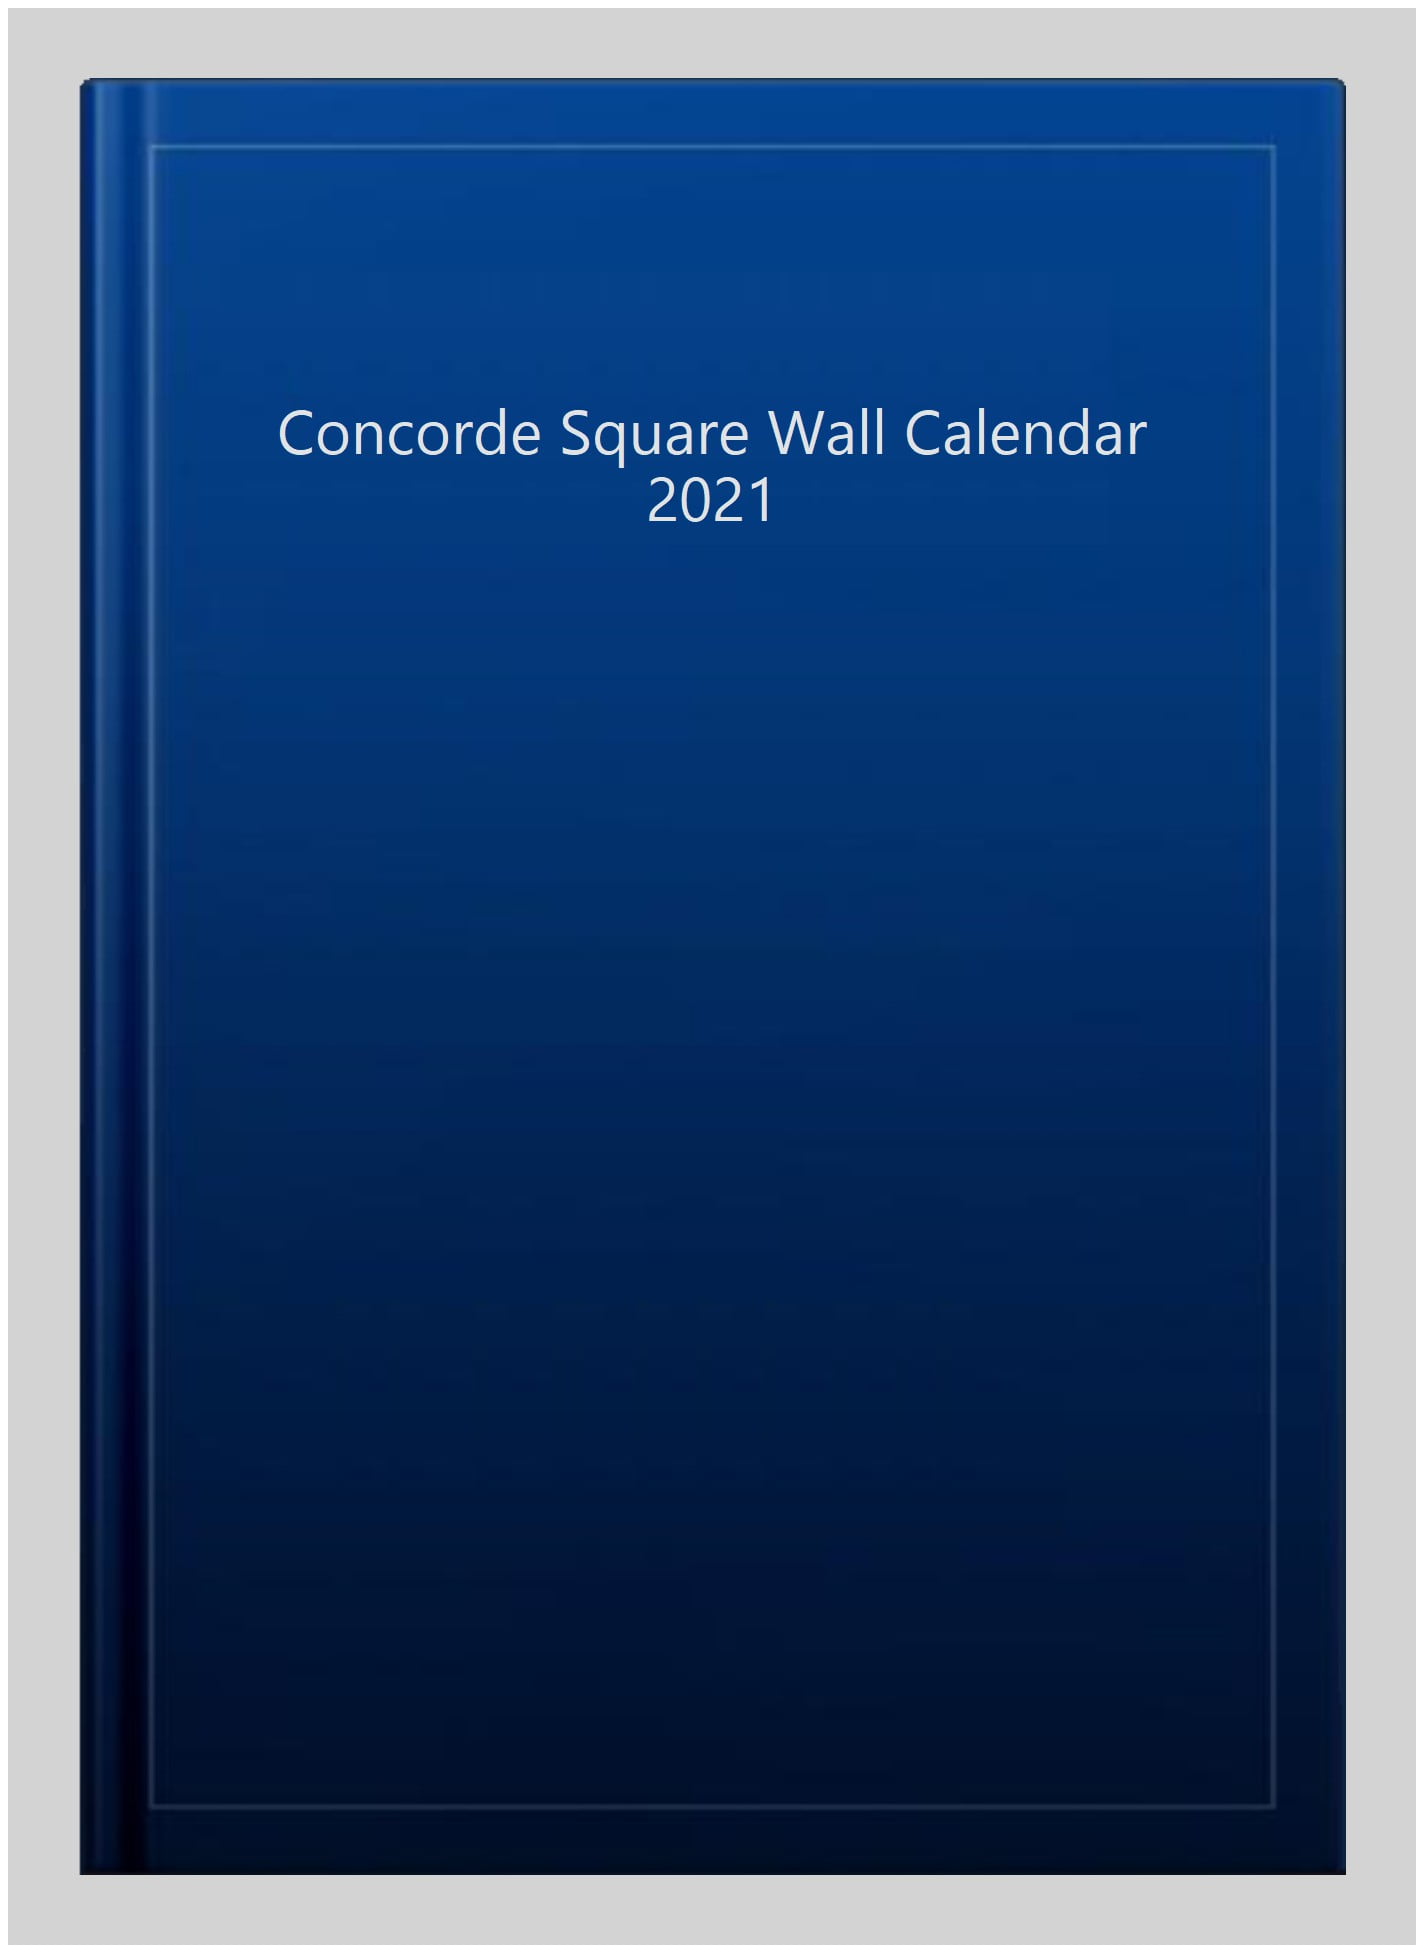 Concorde Square Wall Calendar 2021